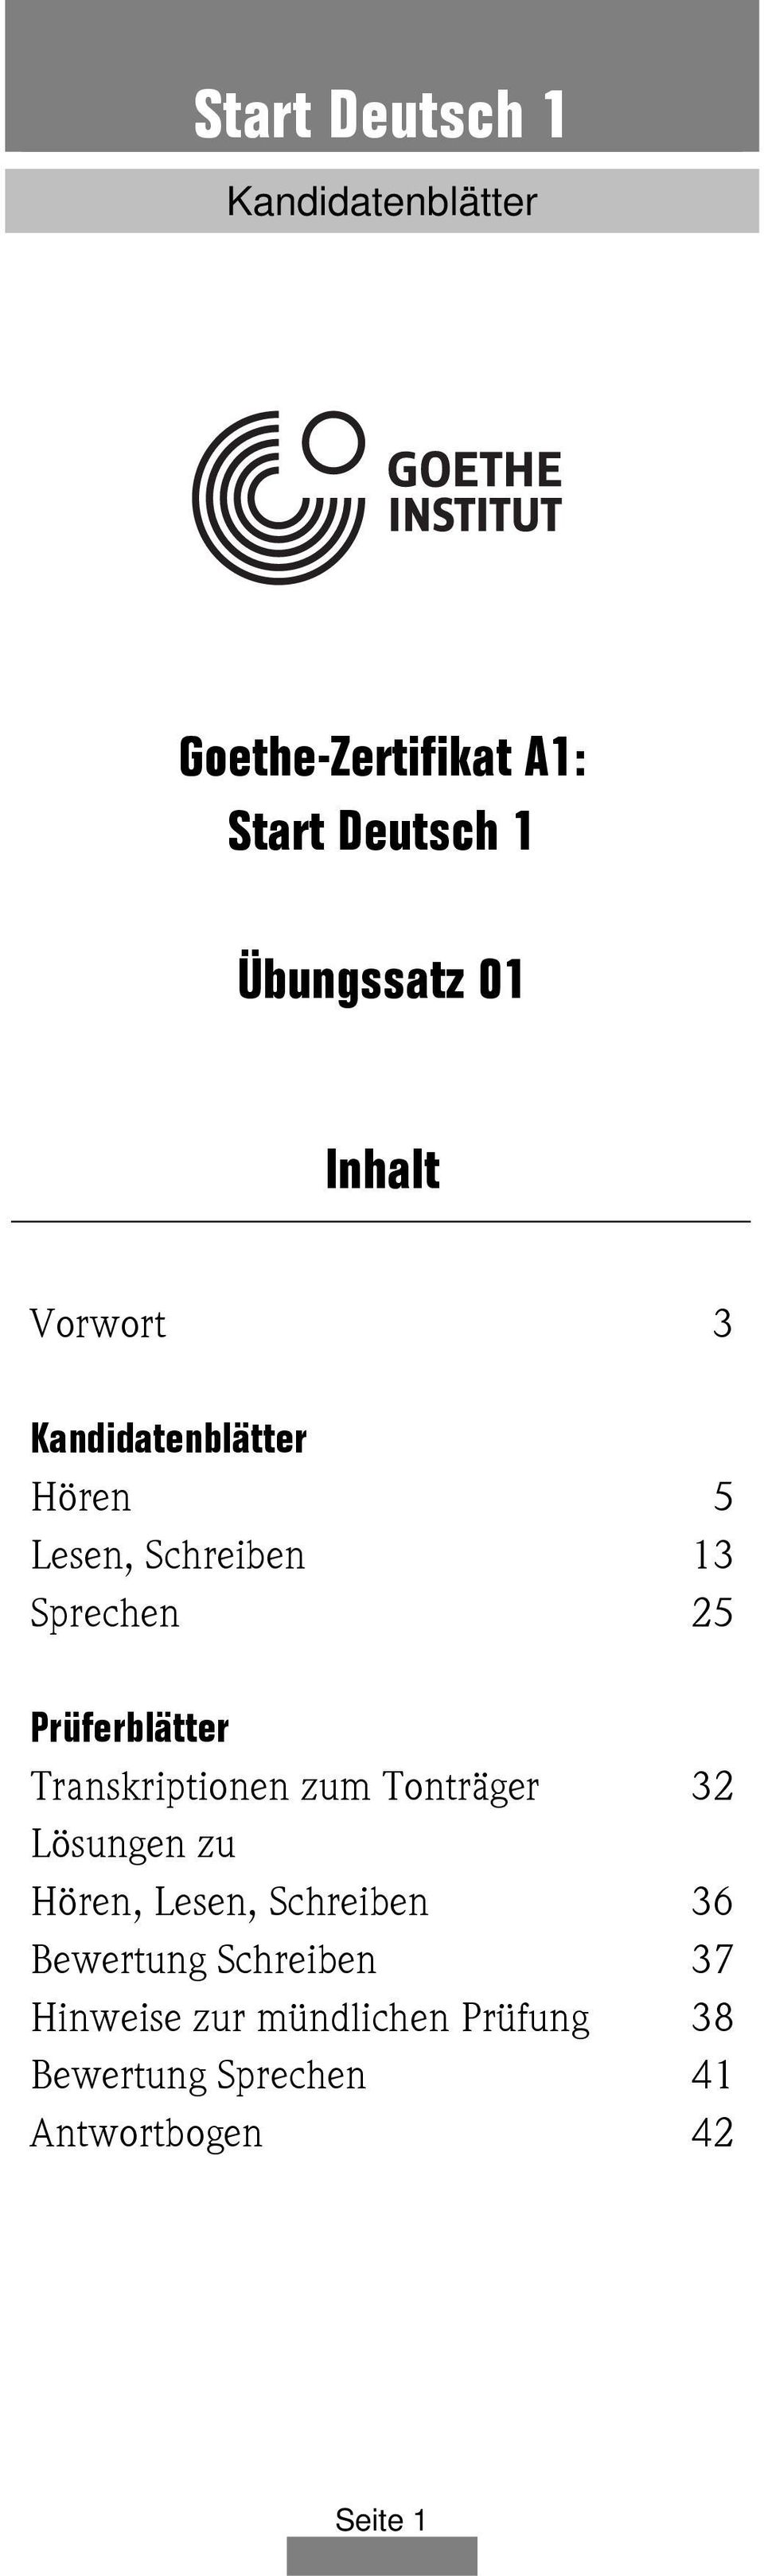 Start Deutsch 1 Kandidatenblatter Goethe Zertifikat A1 Start